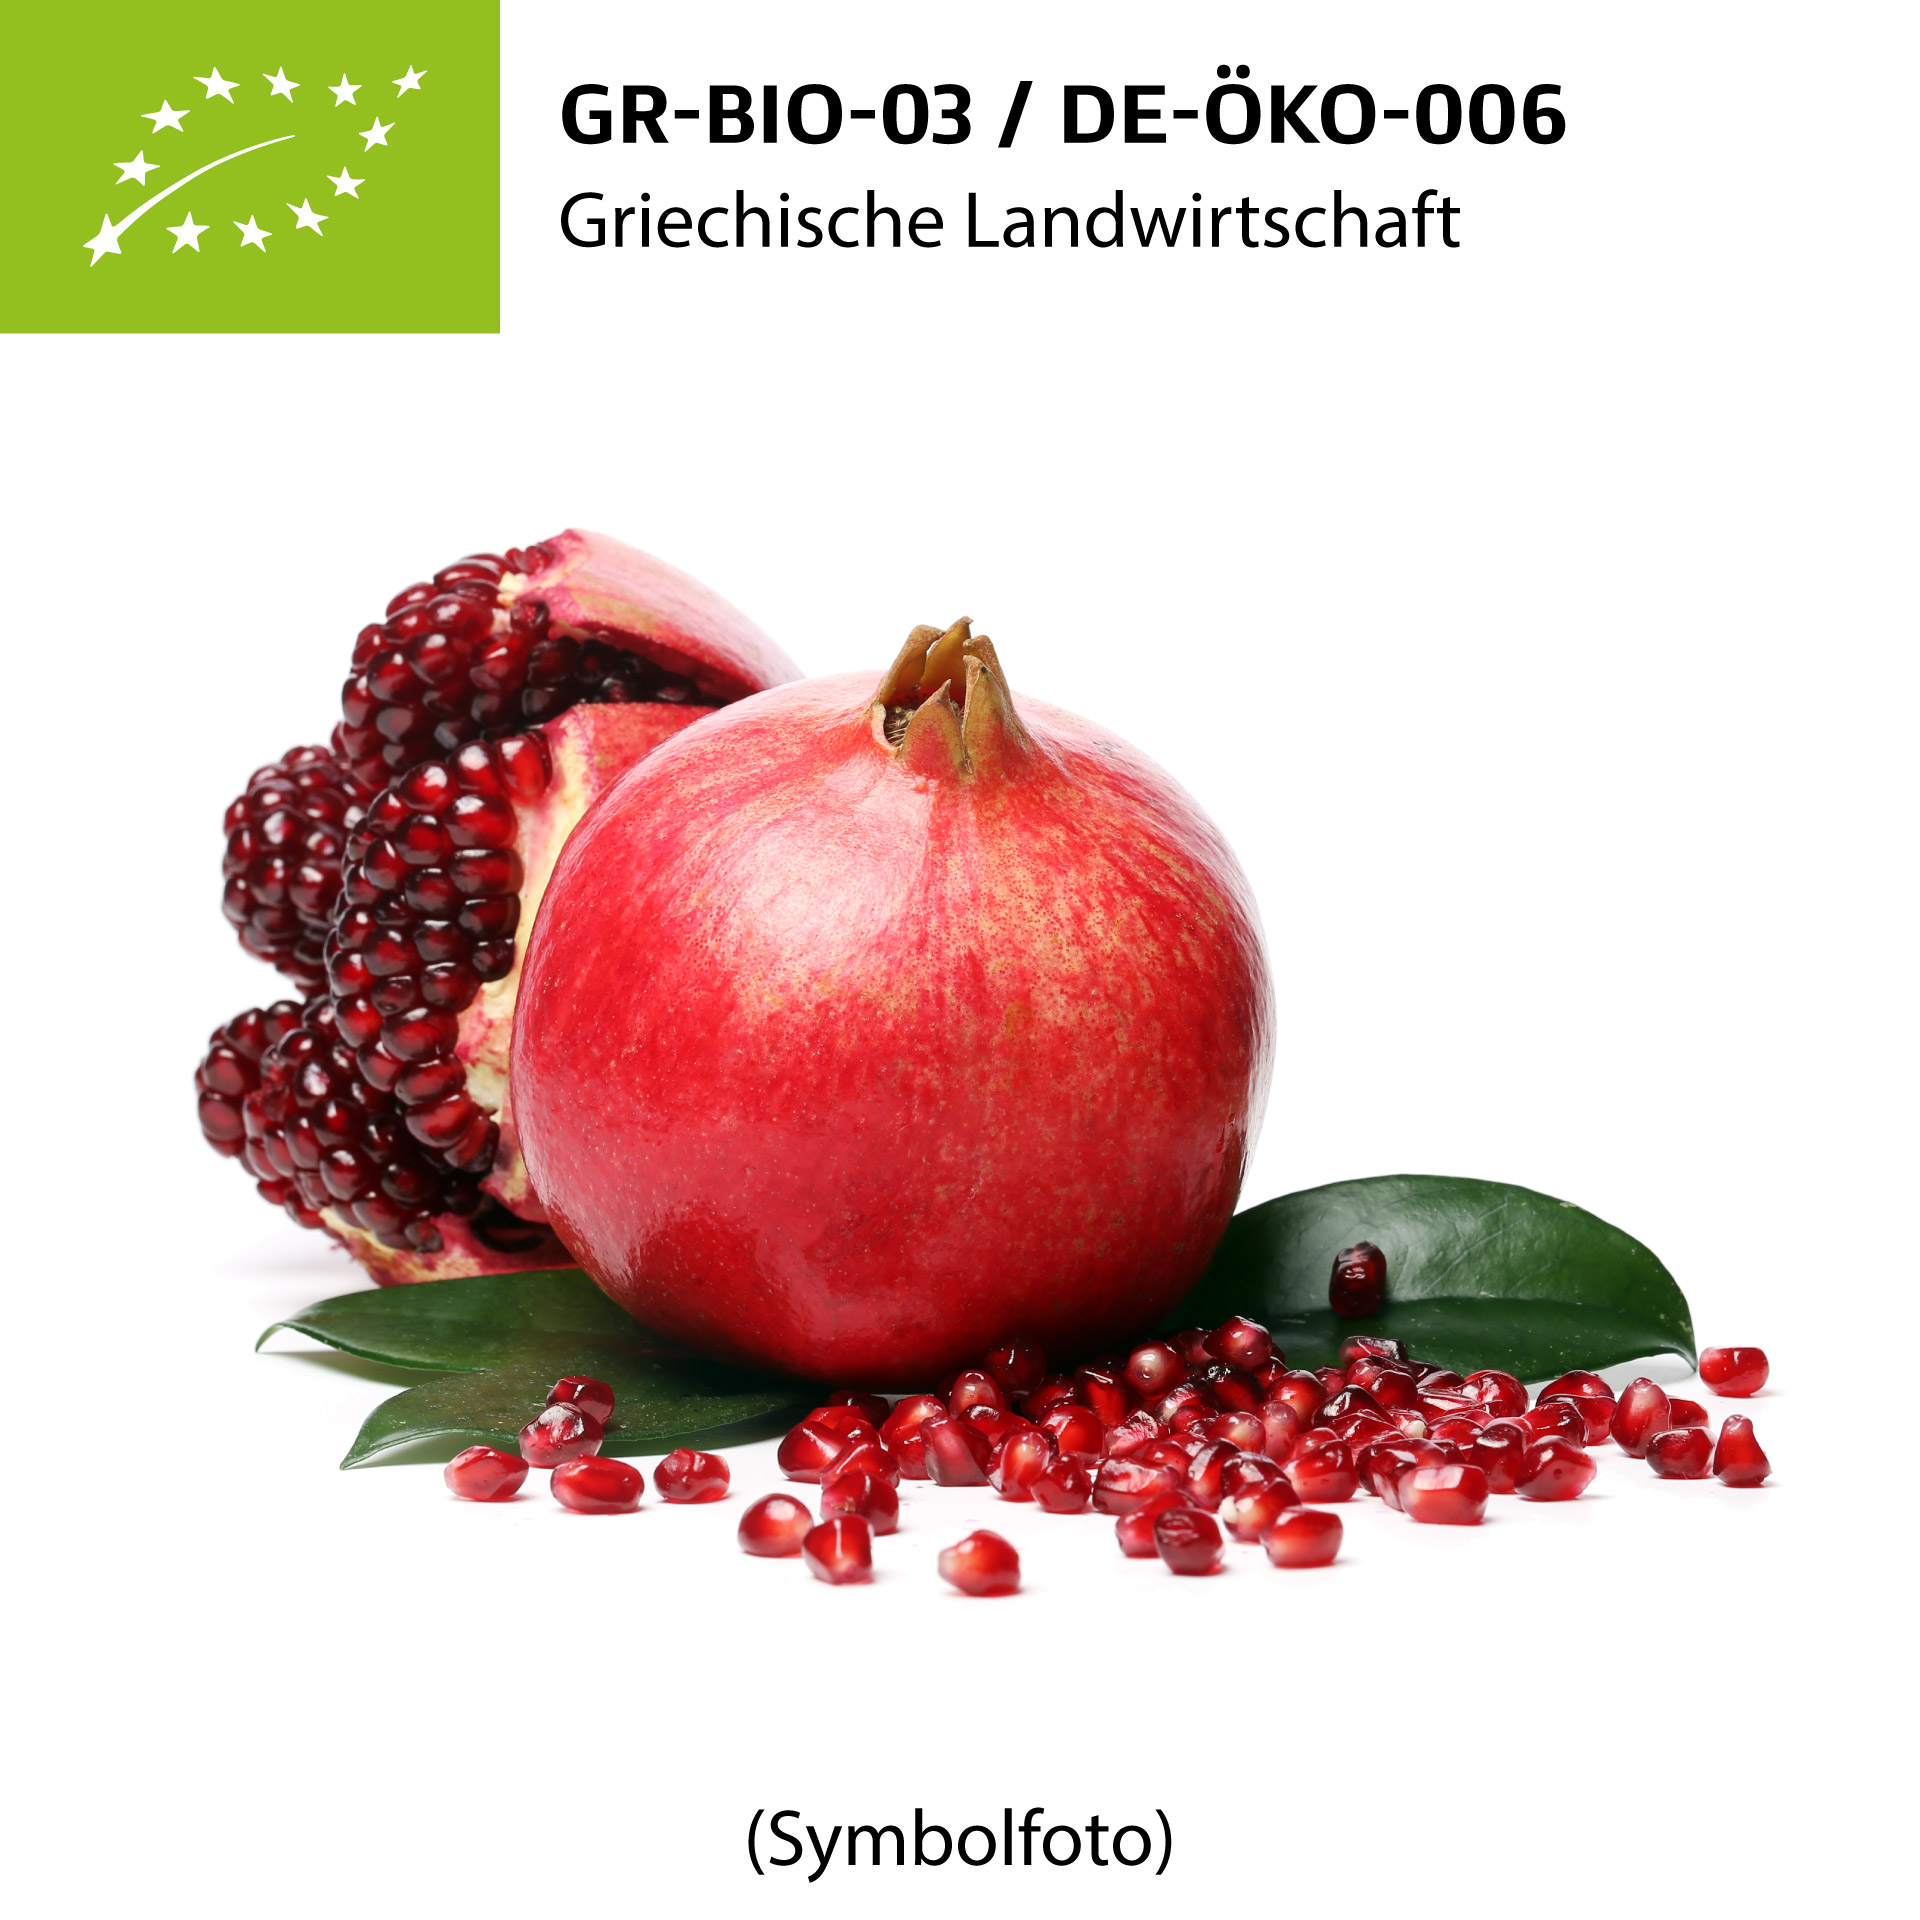  Frische BIO-Granatäpfel "GLYKA" aus Kreta 1 Stück